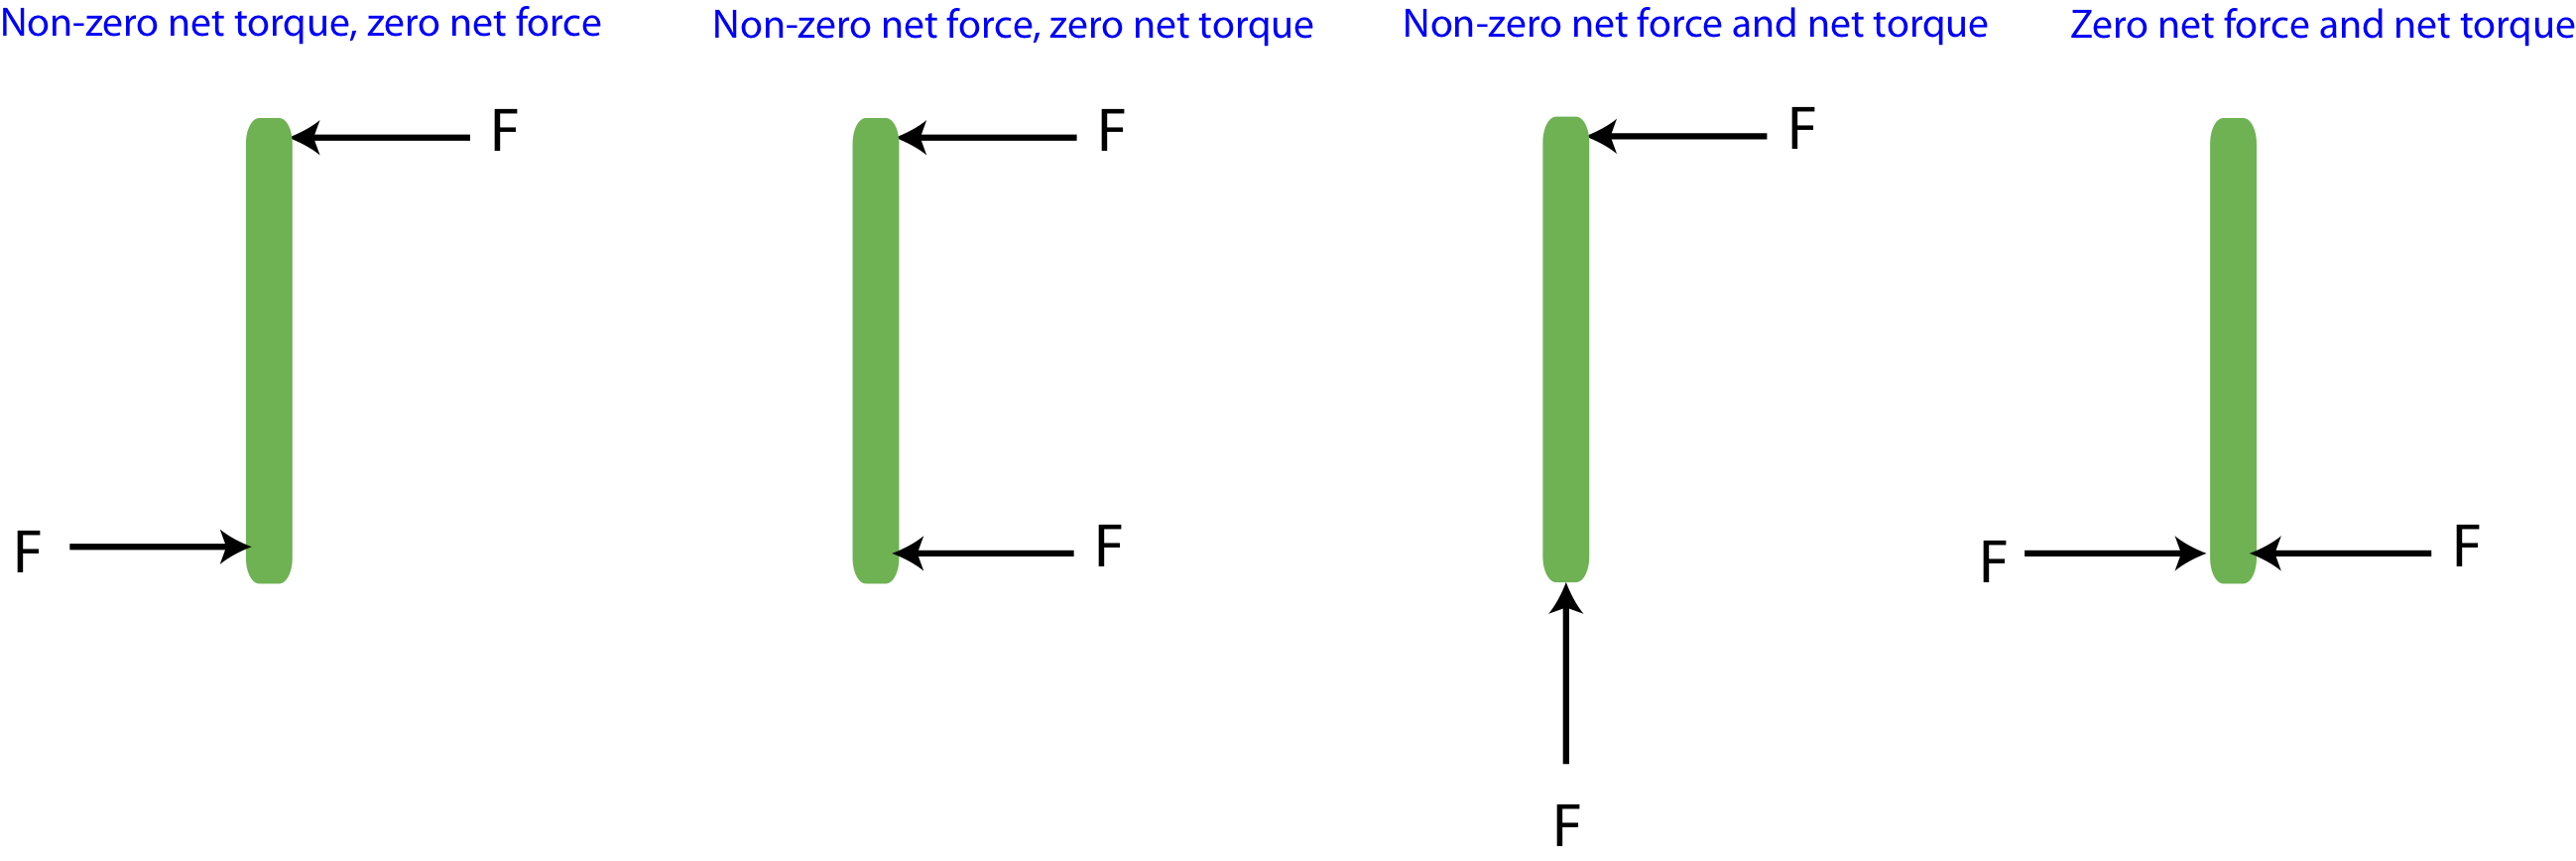 torque-force-net.png